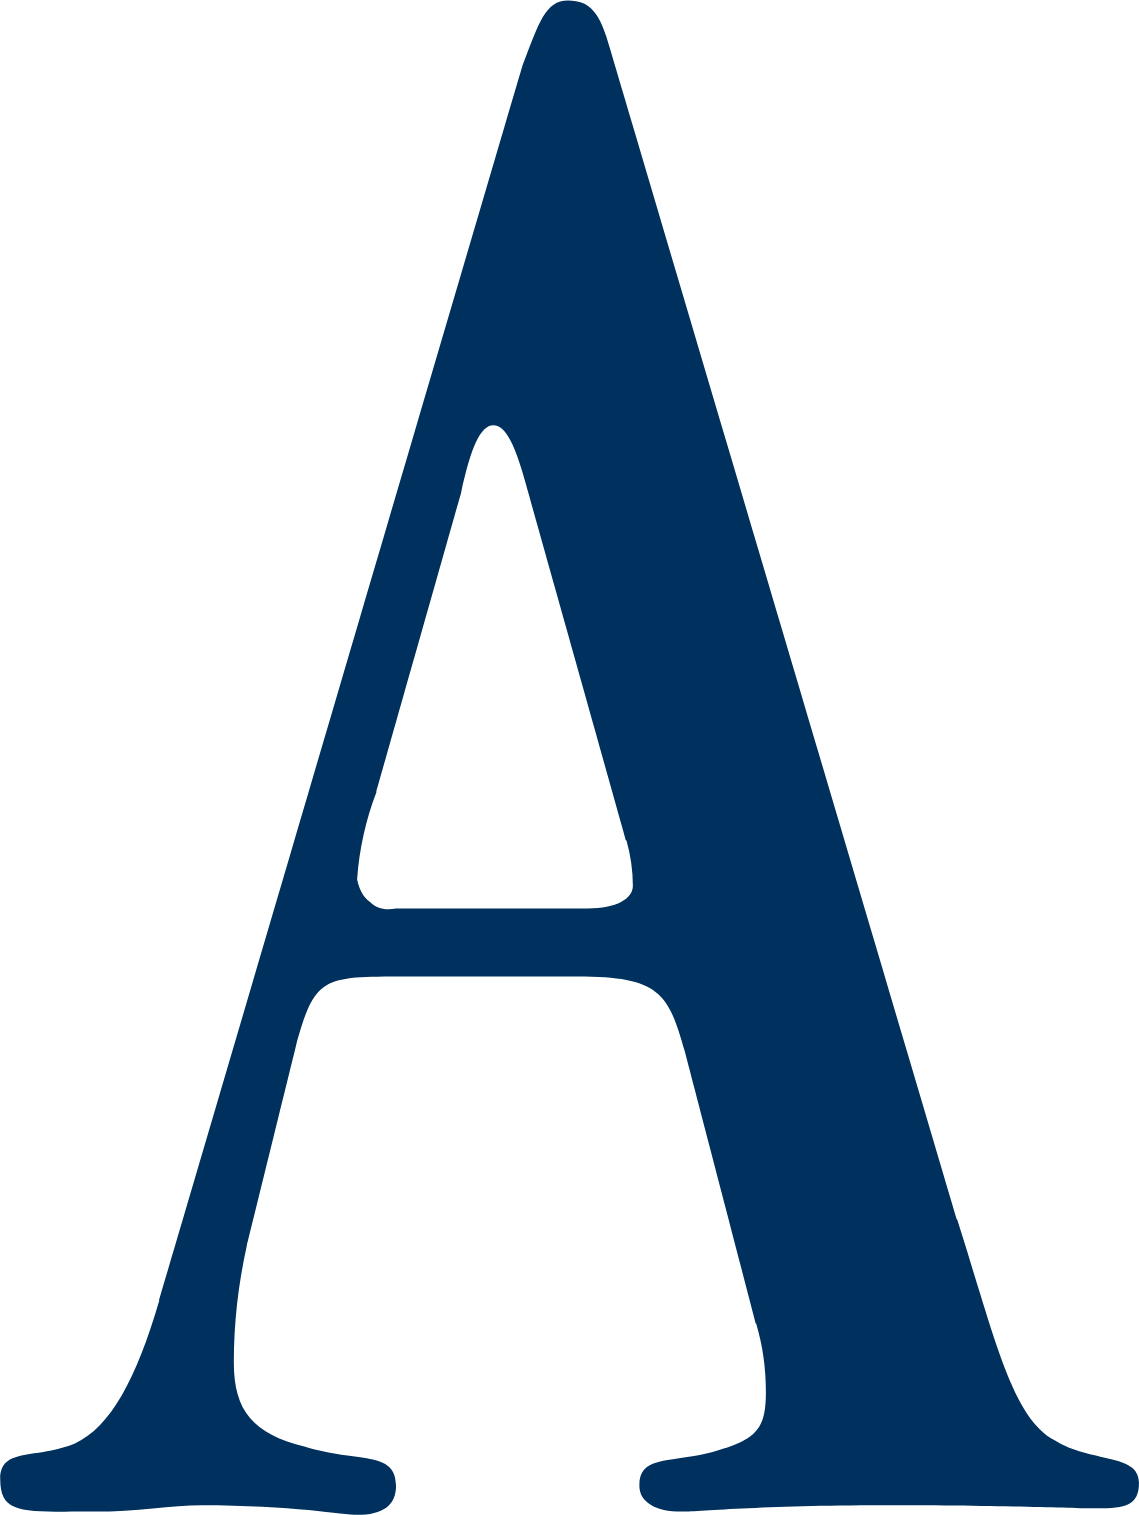 Ashmore Group logo (transparent PNG)